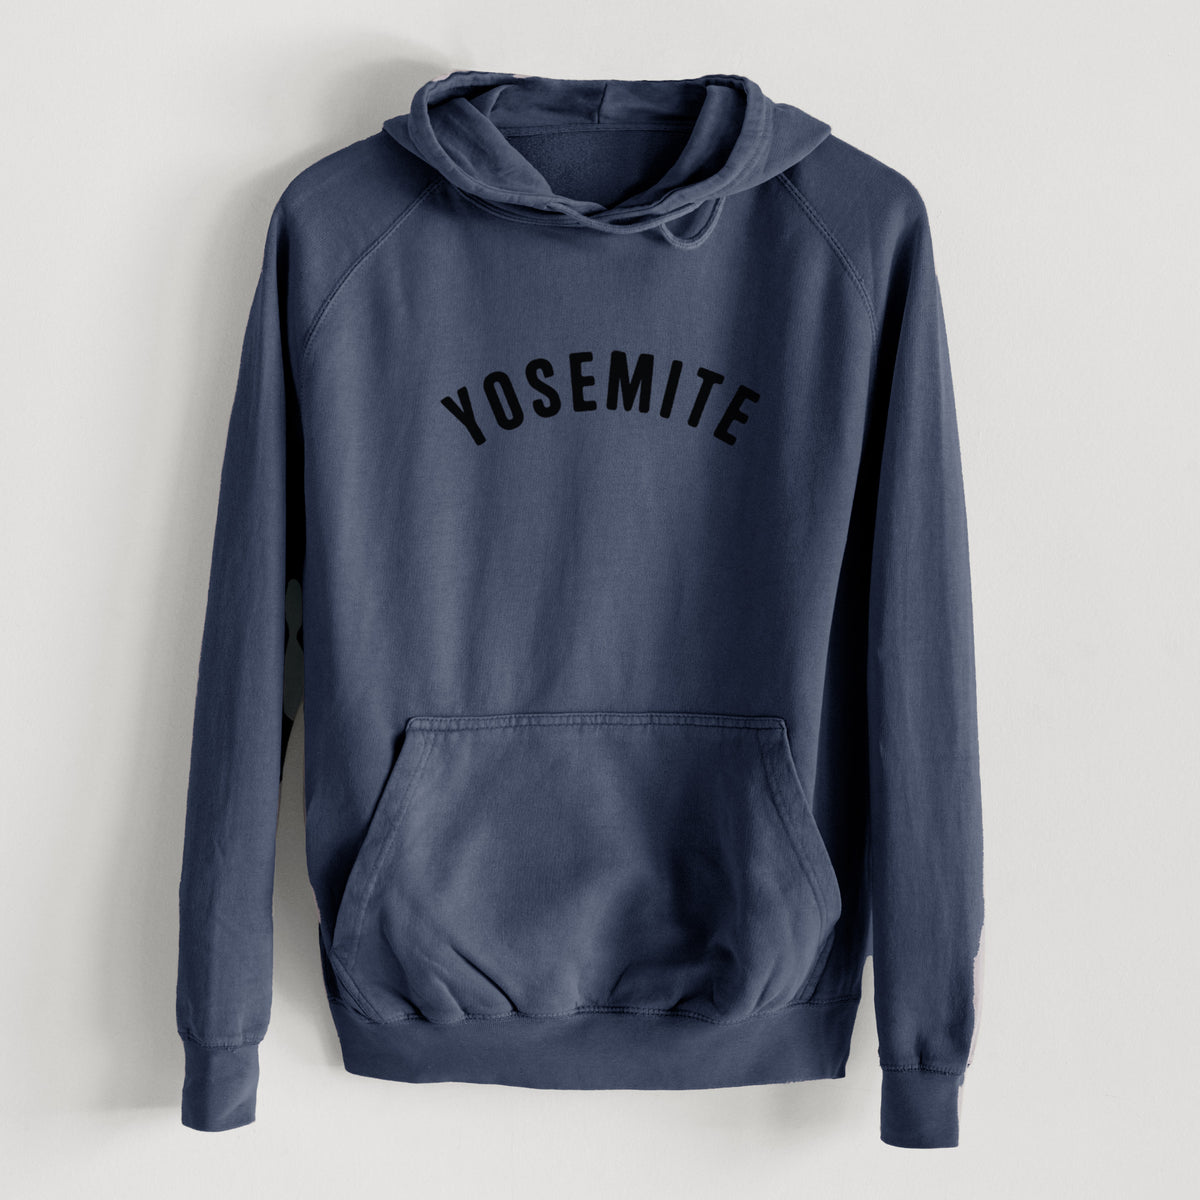 Yosemite  - Mid-Weight Unisex Vintage 100% Cotton Hoodie